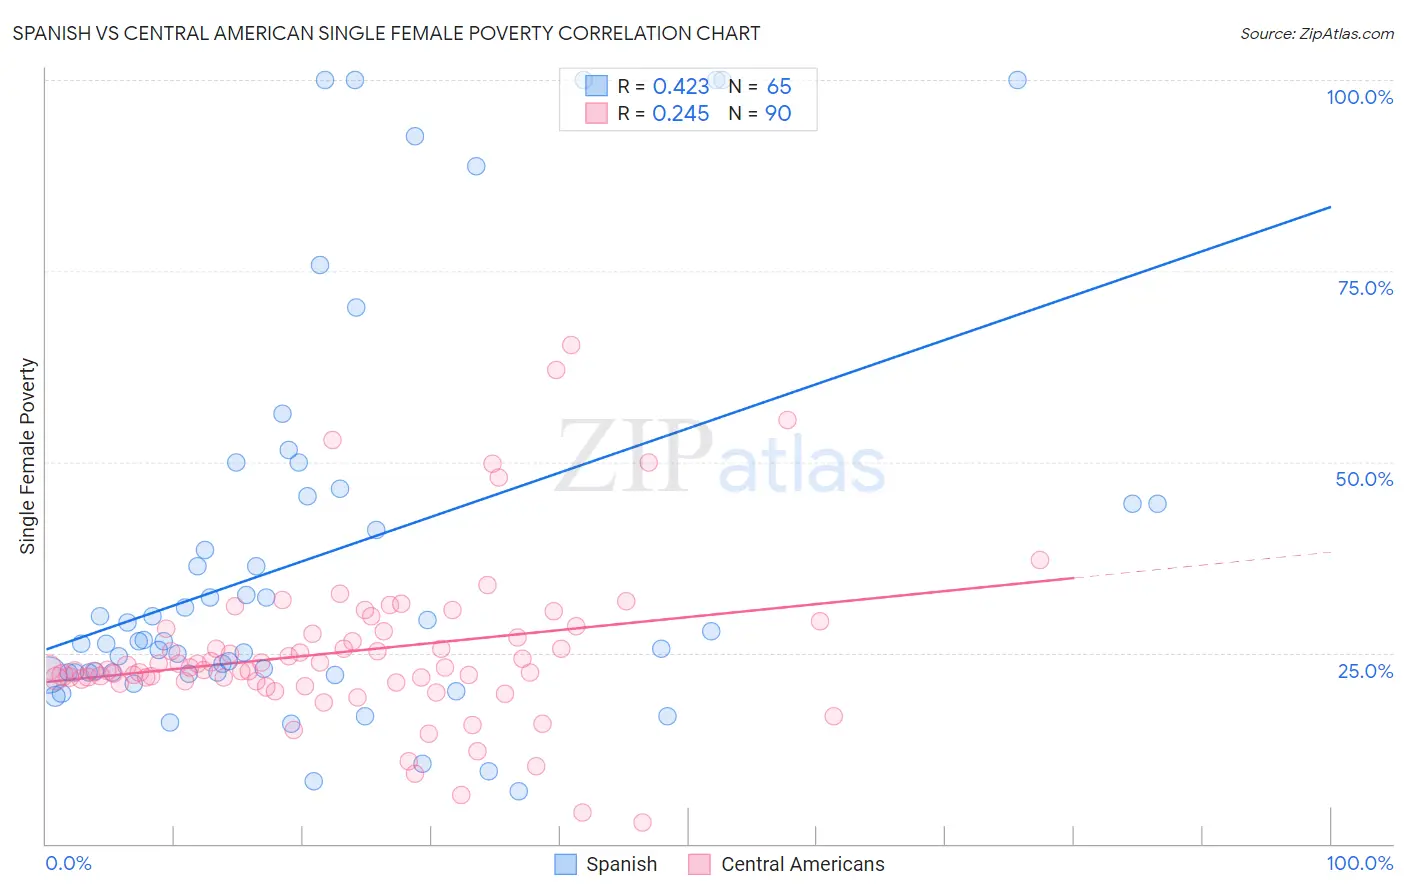 Spanish vs Central American Single Female Poverty